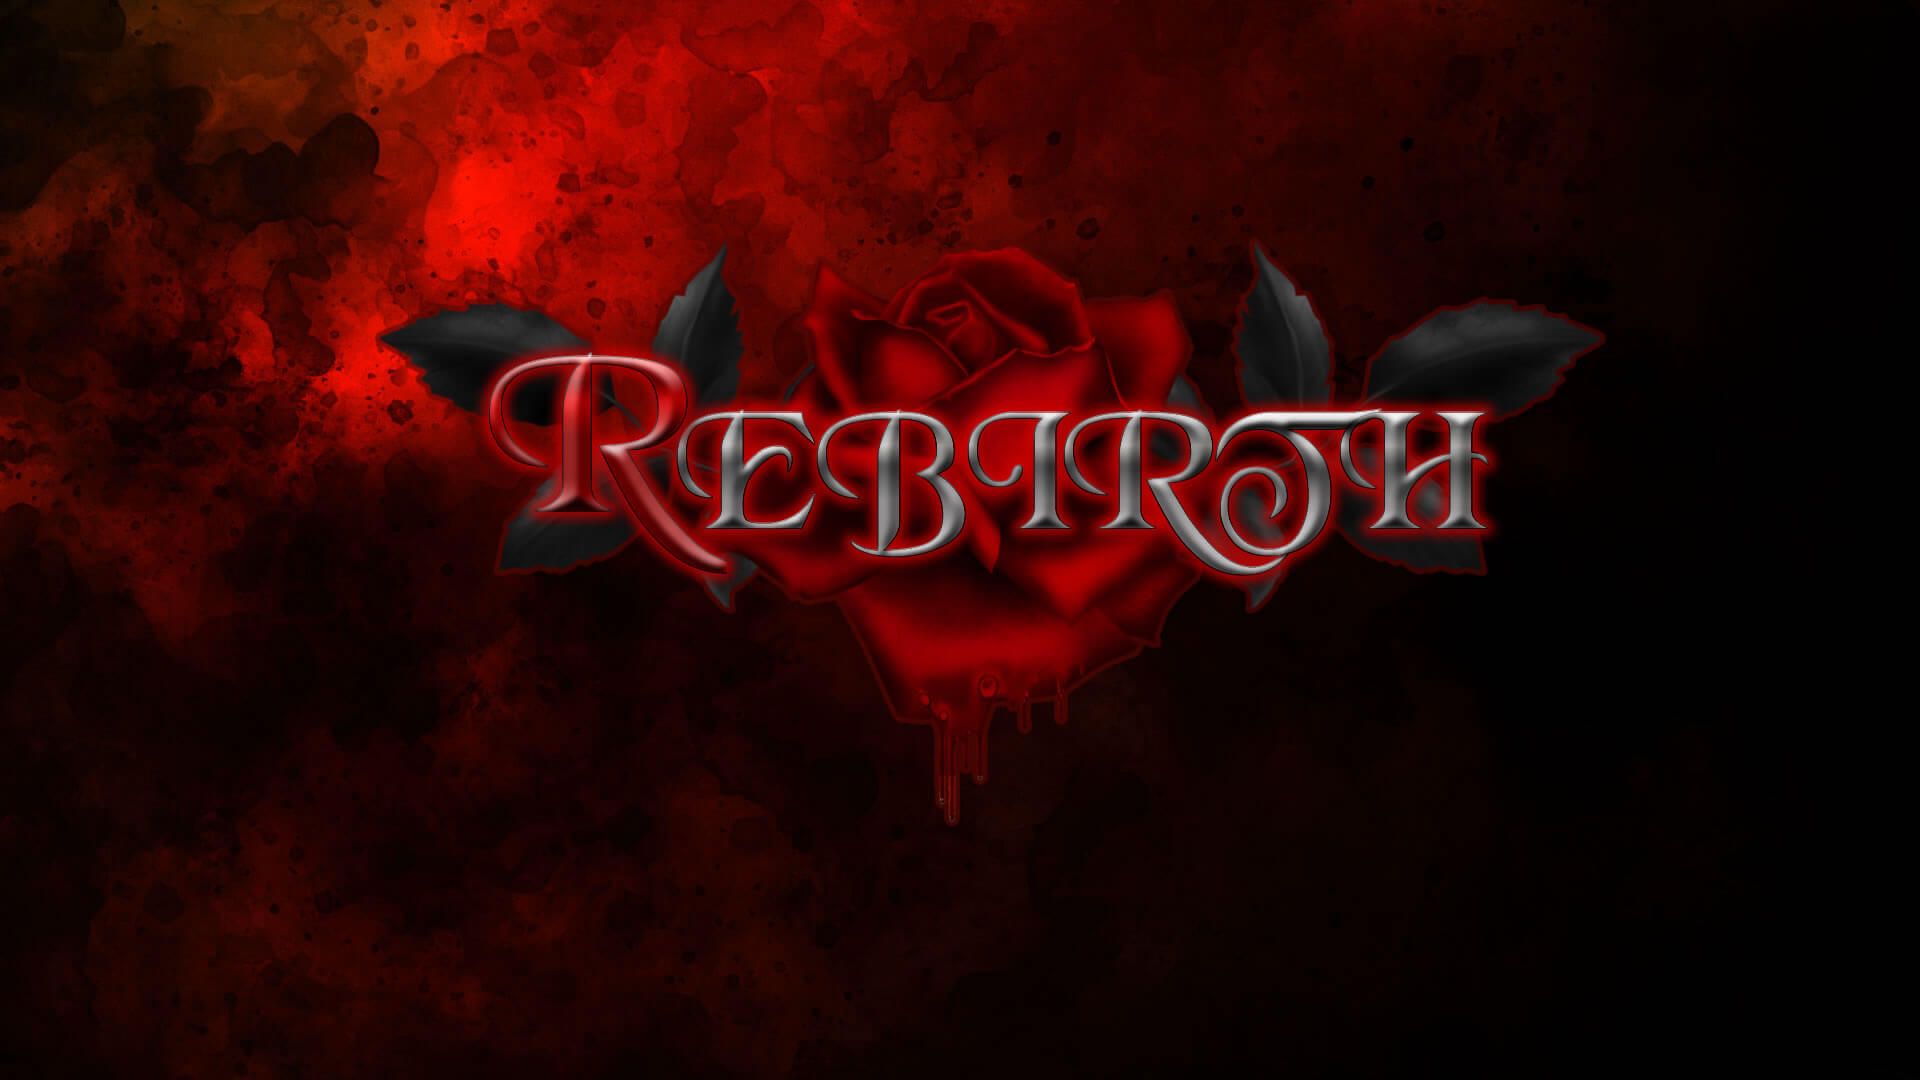 Rebirth [Episode 4 Update 1]